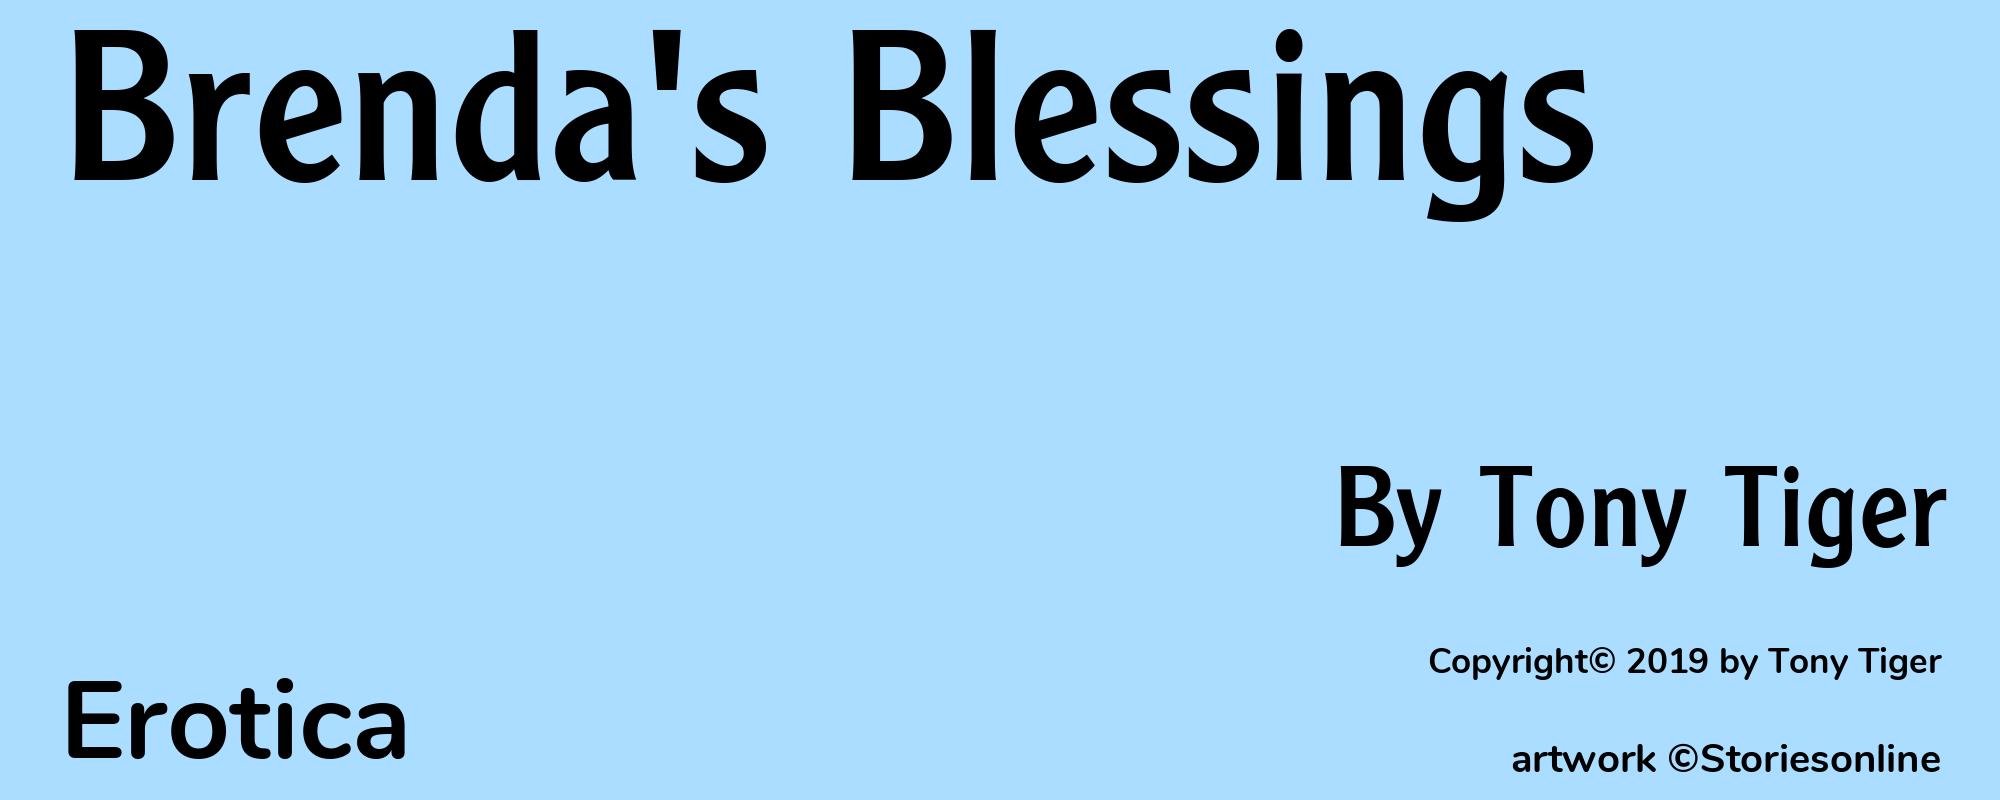 Brenda's Blessings - Cover